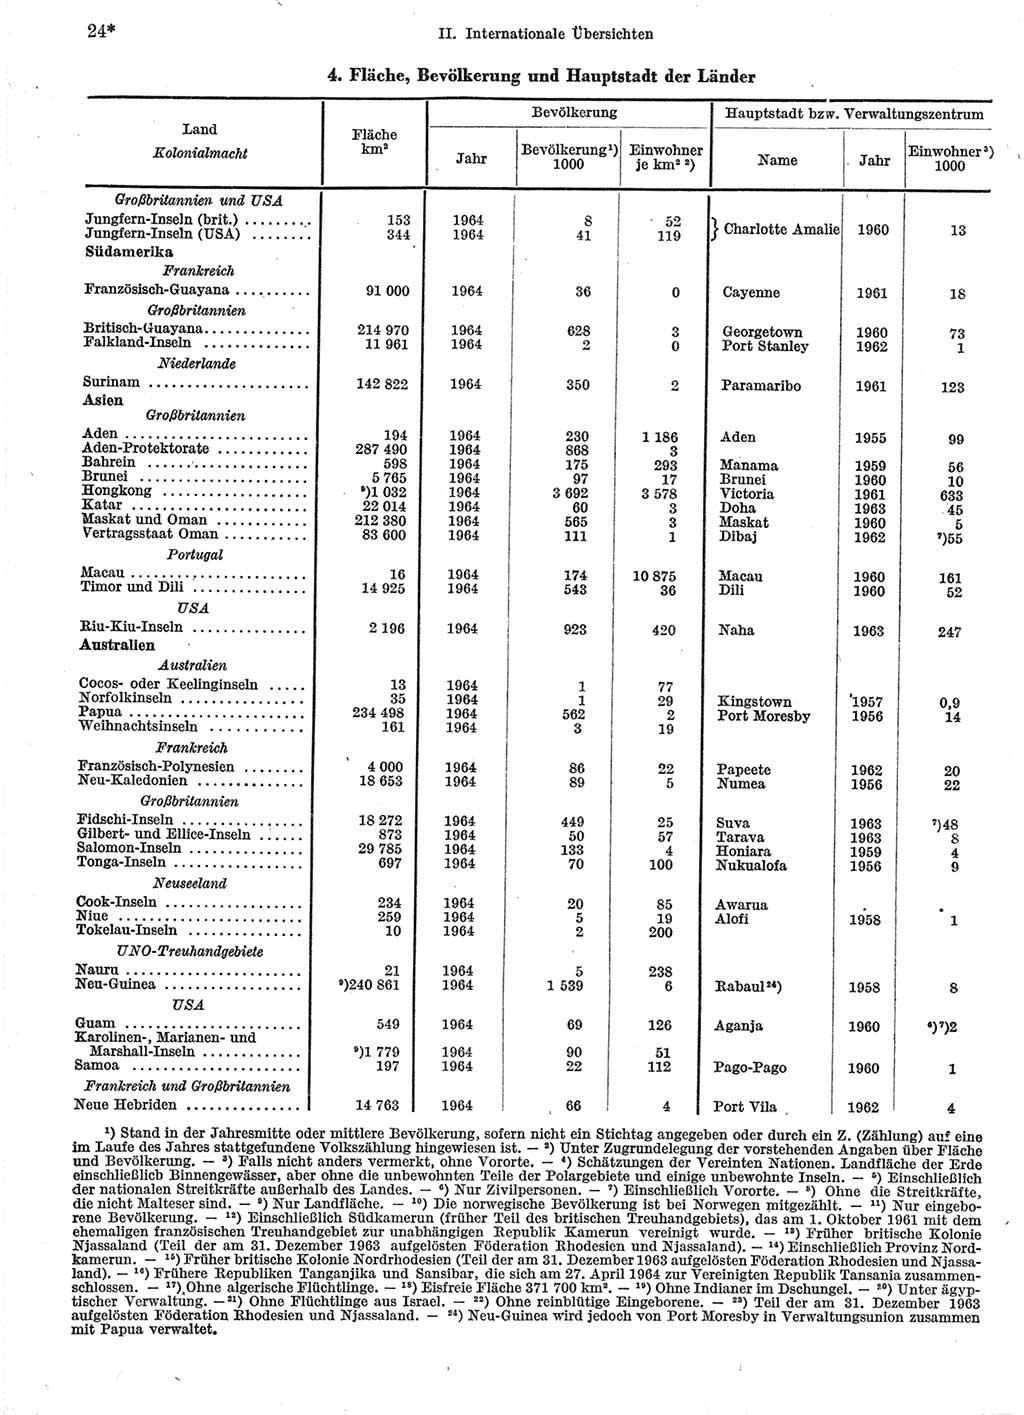 Statistisches Jahrbuch der Deutschen Demokratischen Republik (DDR) 1966, Seite 24 (Stat. Jb. DDR 1966, S. 24)